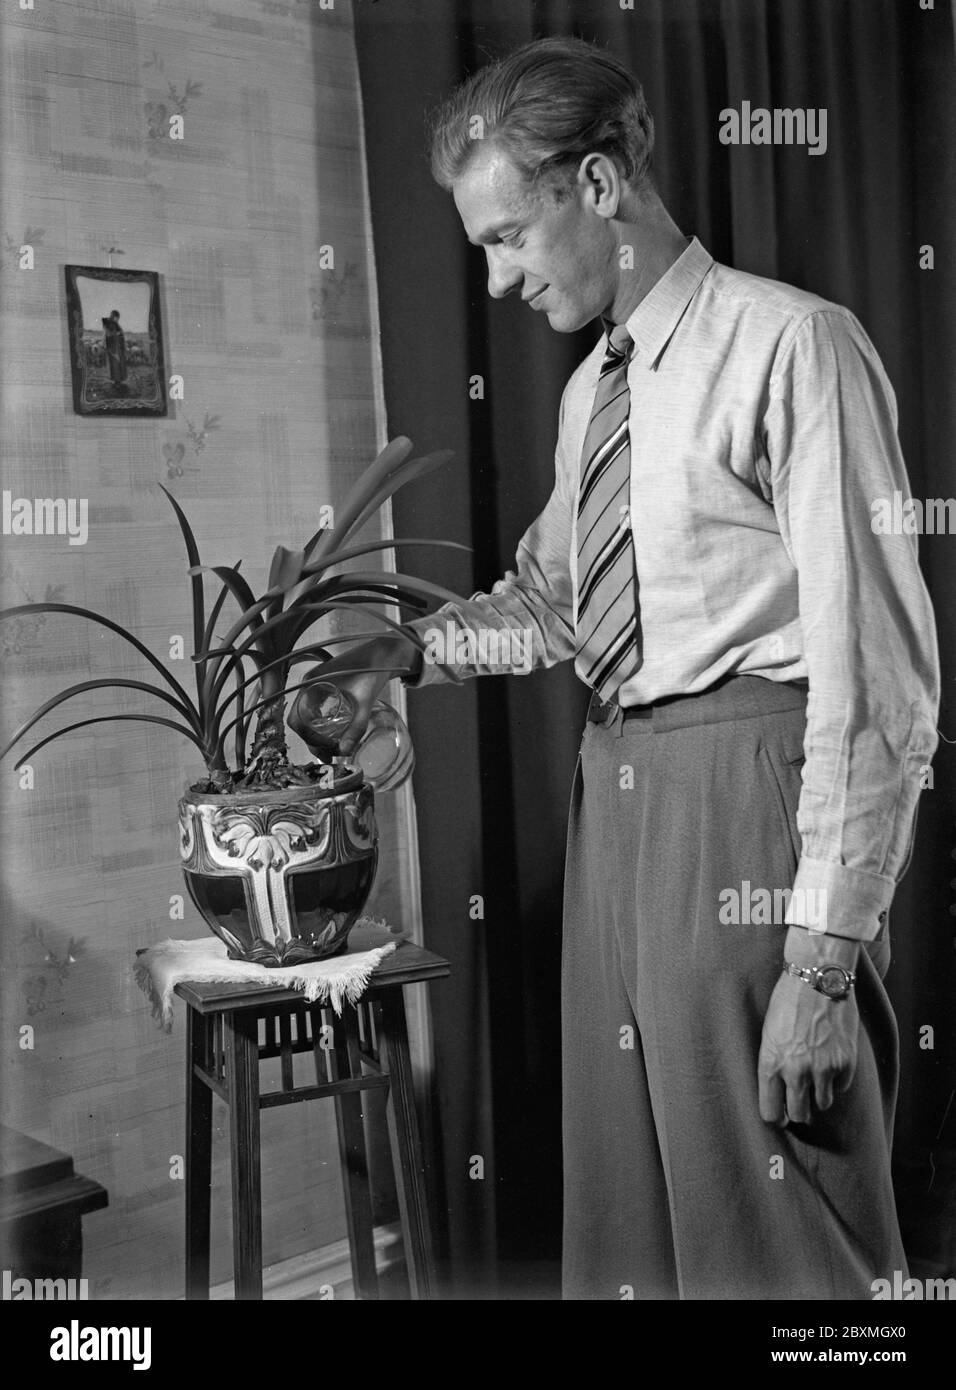 Dans les années 1940. L'athlète suédois Åke Ödmark à la maison arroser ses plantes. Suède juin 1940 Kristoffersson réf. 149-12,15 Banque D'Images